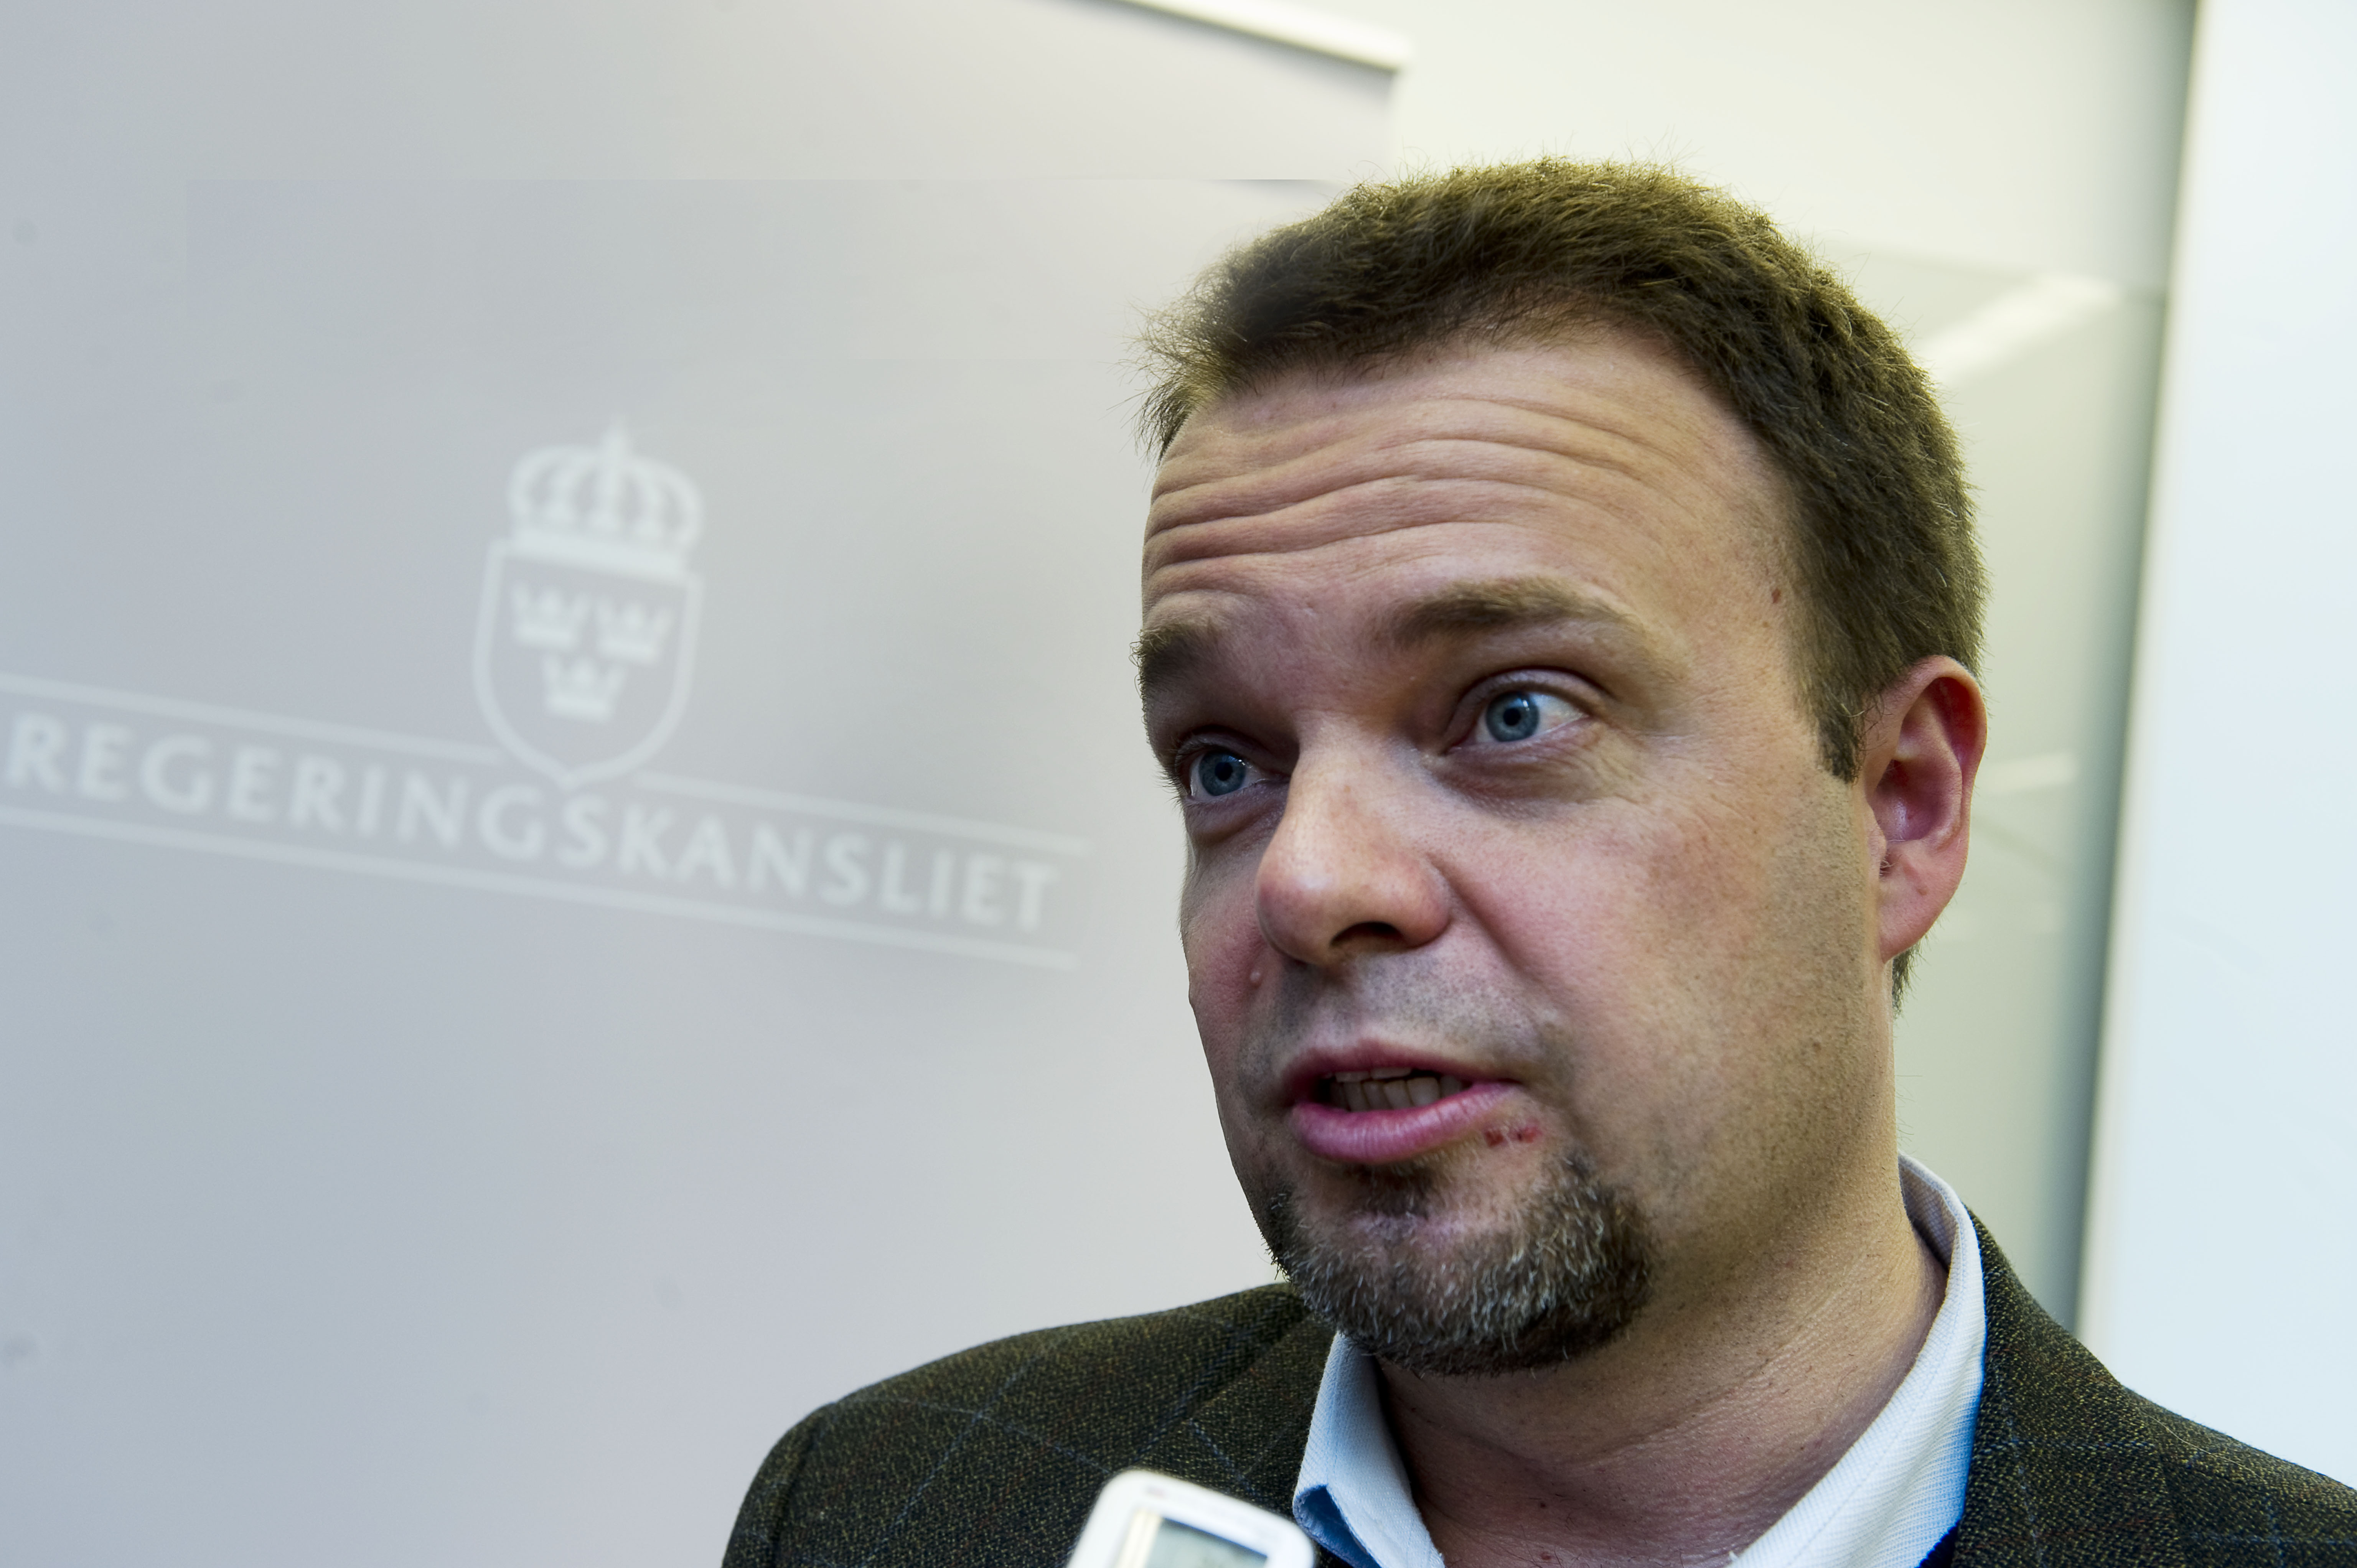 Alliansen, Jobb, Riksdagsvalet 2010, Sven Otto Littorin, Register, Ungdomsarbetslöshet, Politik